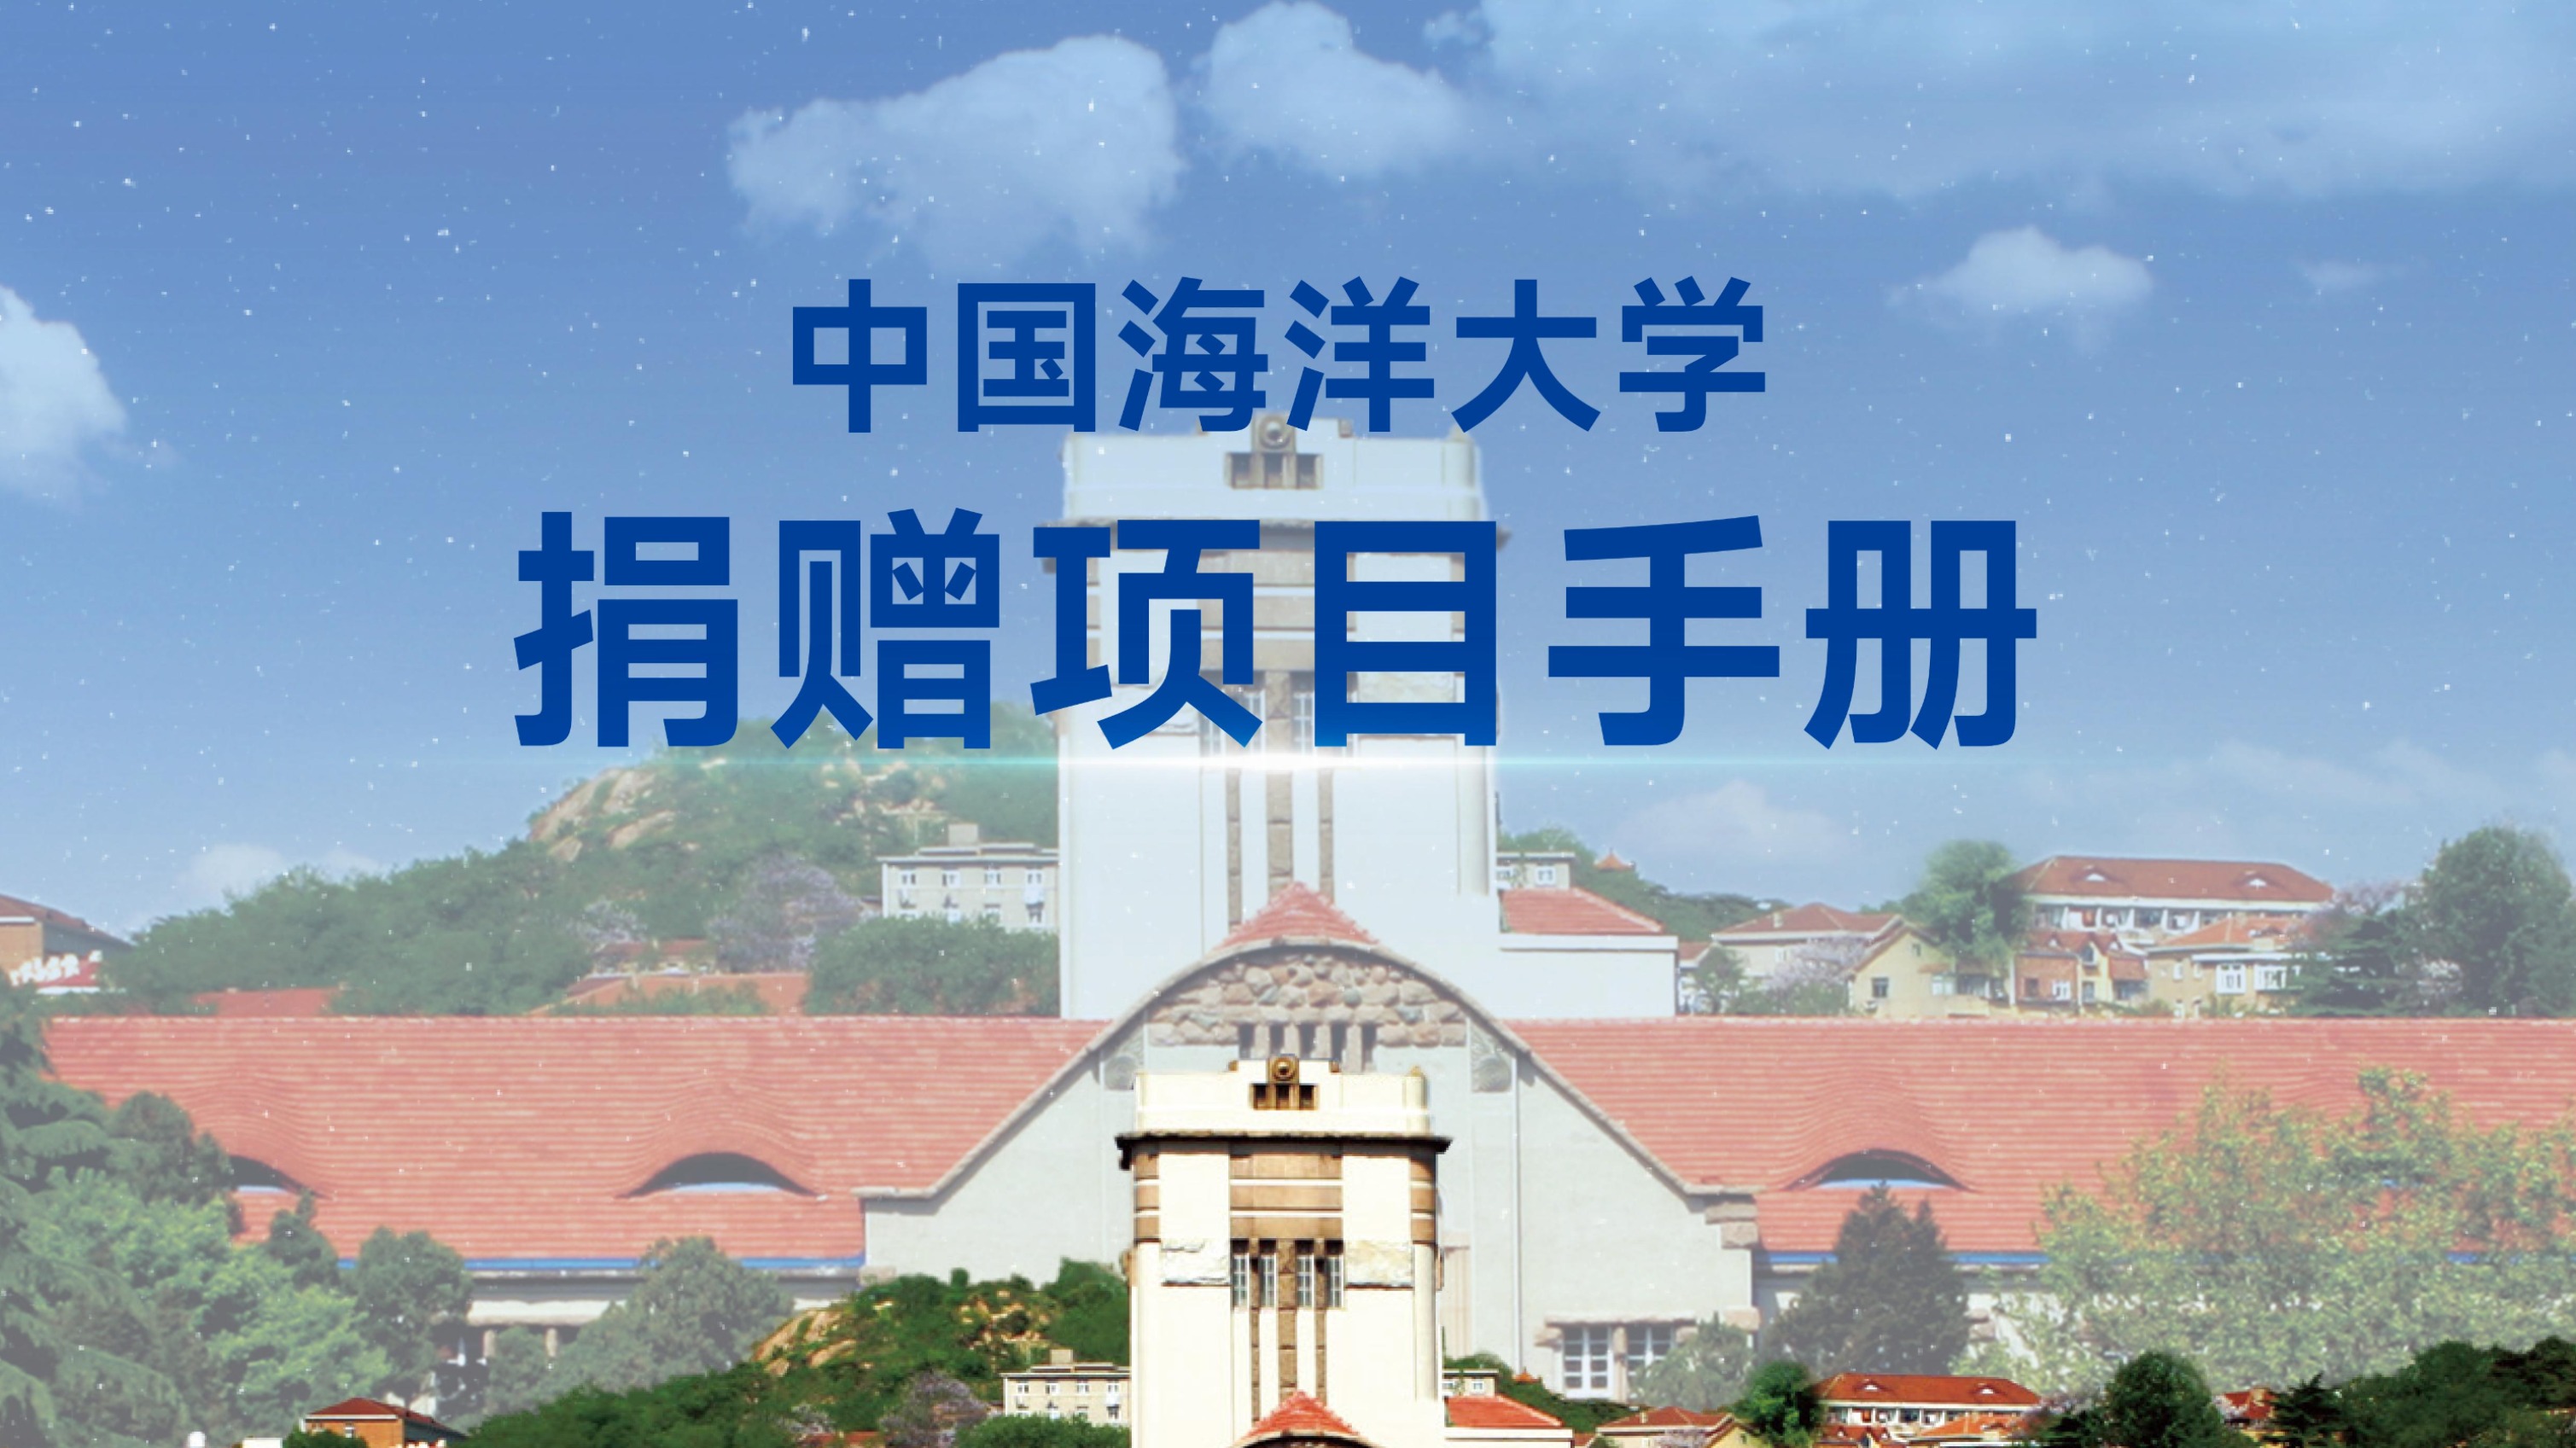 中国海洋大学捐赠项目手册